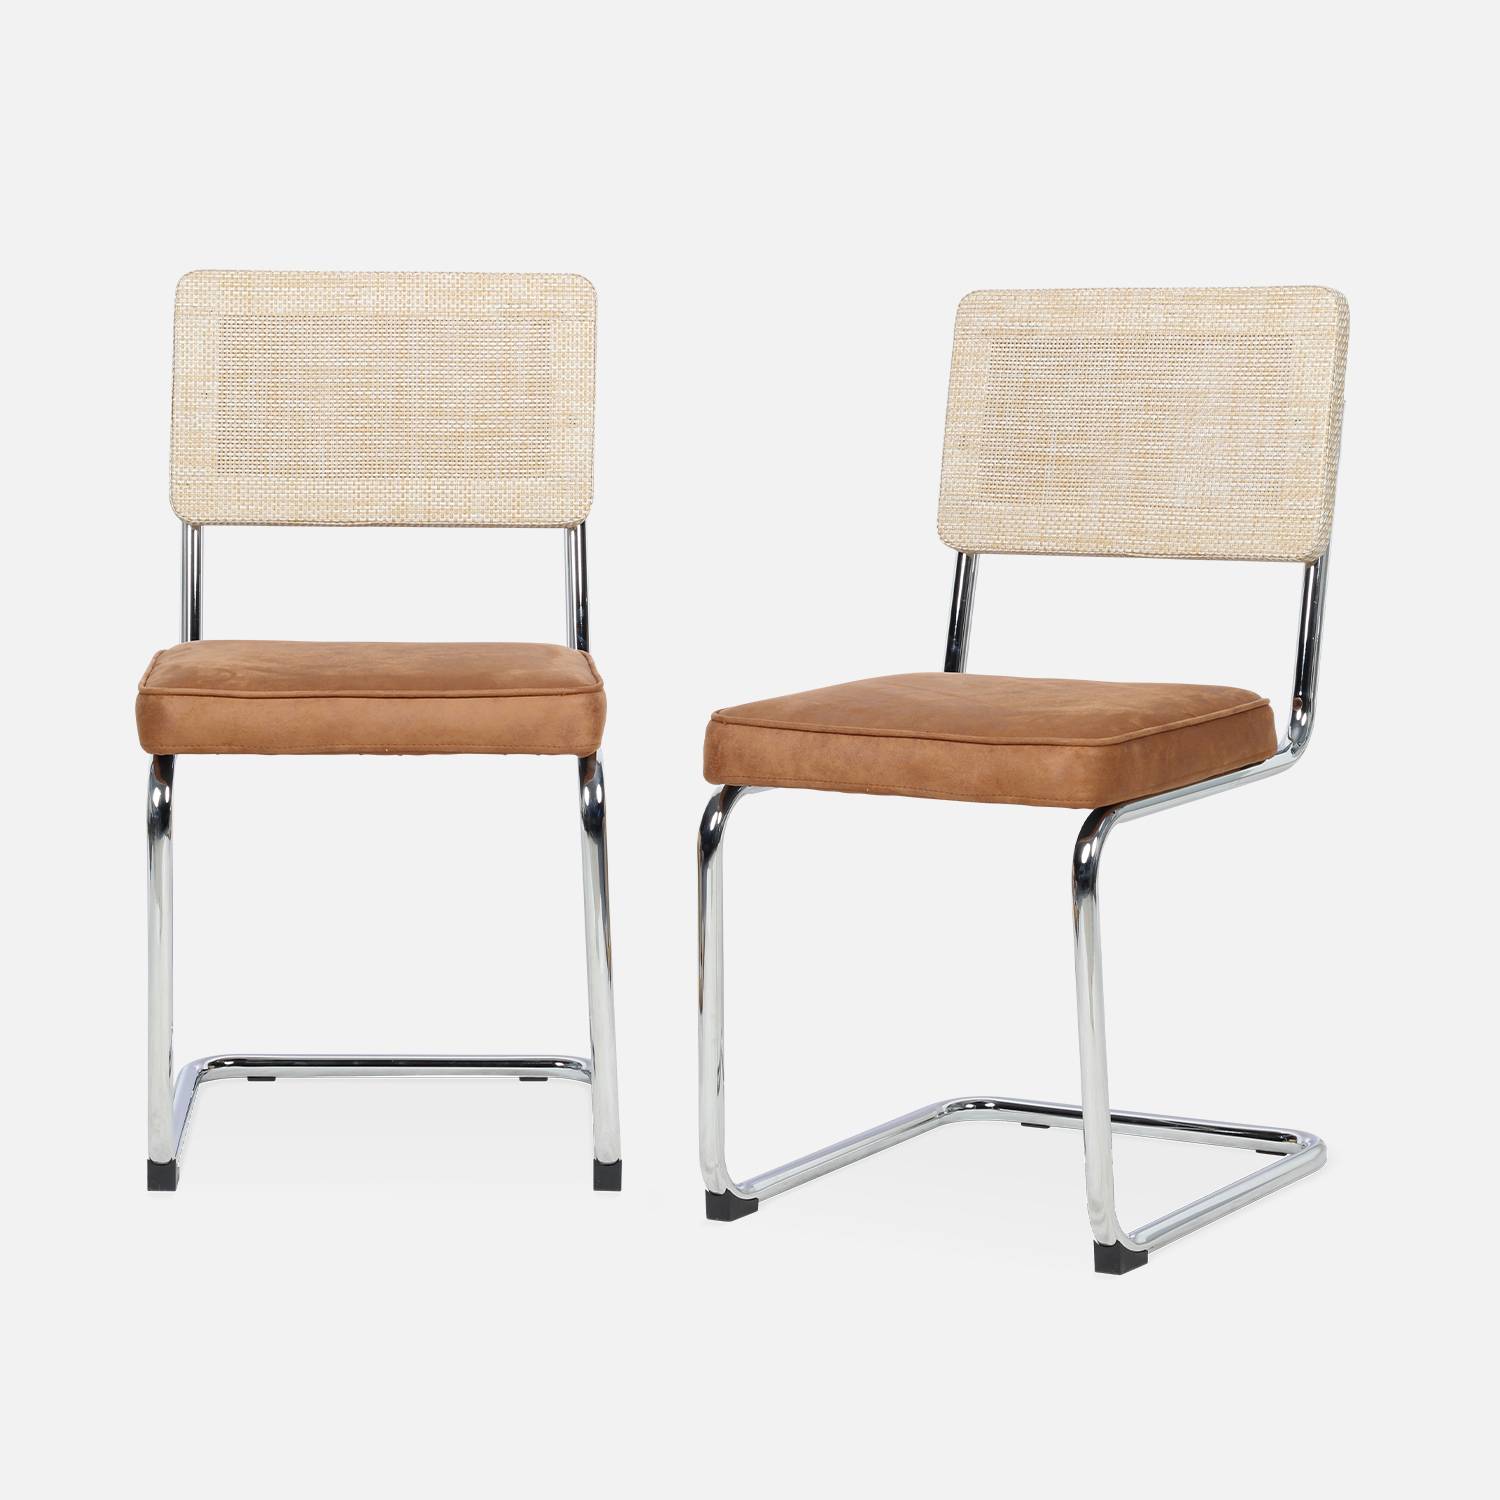 2 cadeiras cantilever - Maja - tecido castanho claro e resina com efeito de rotim, 46 x 54,5 x 84,5 cm Photo4